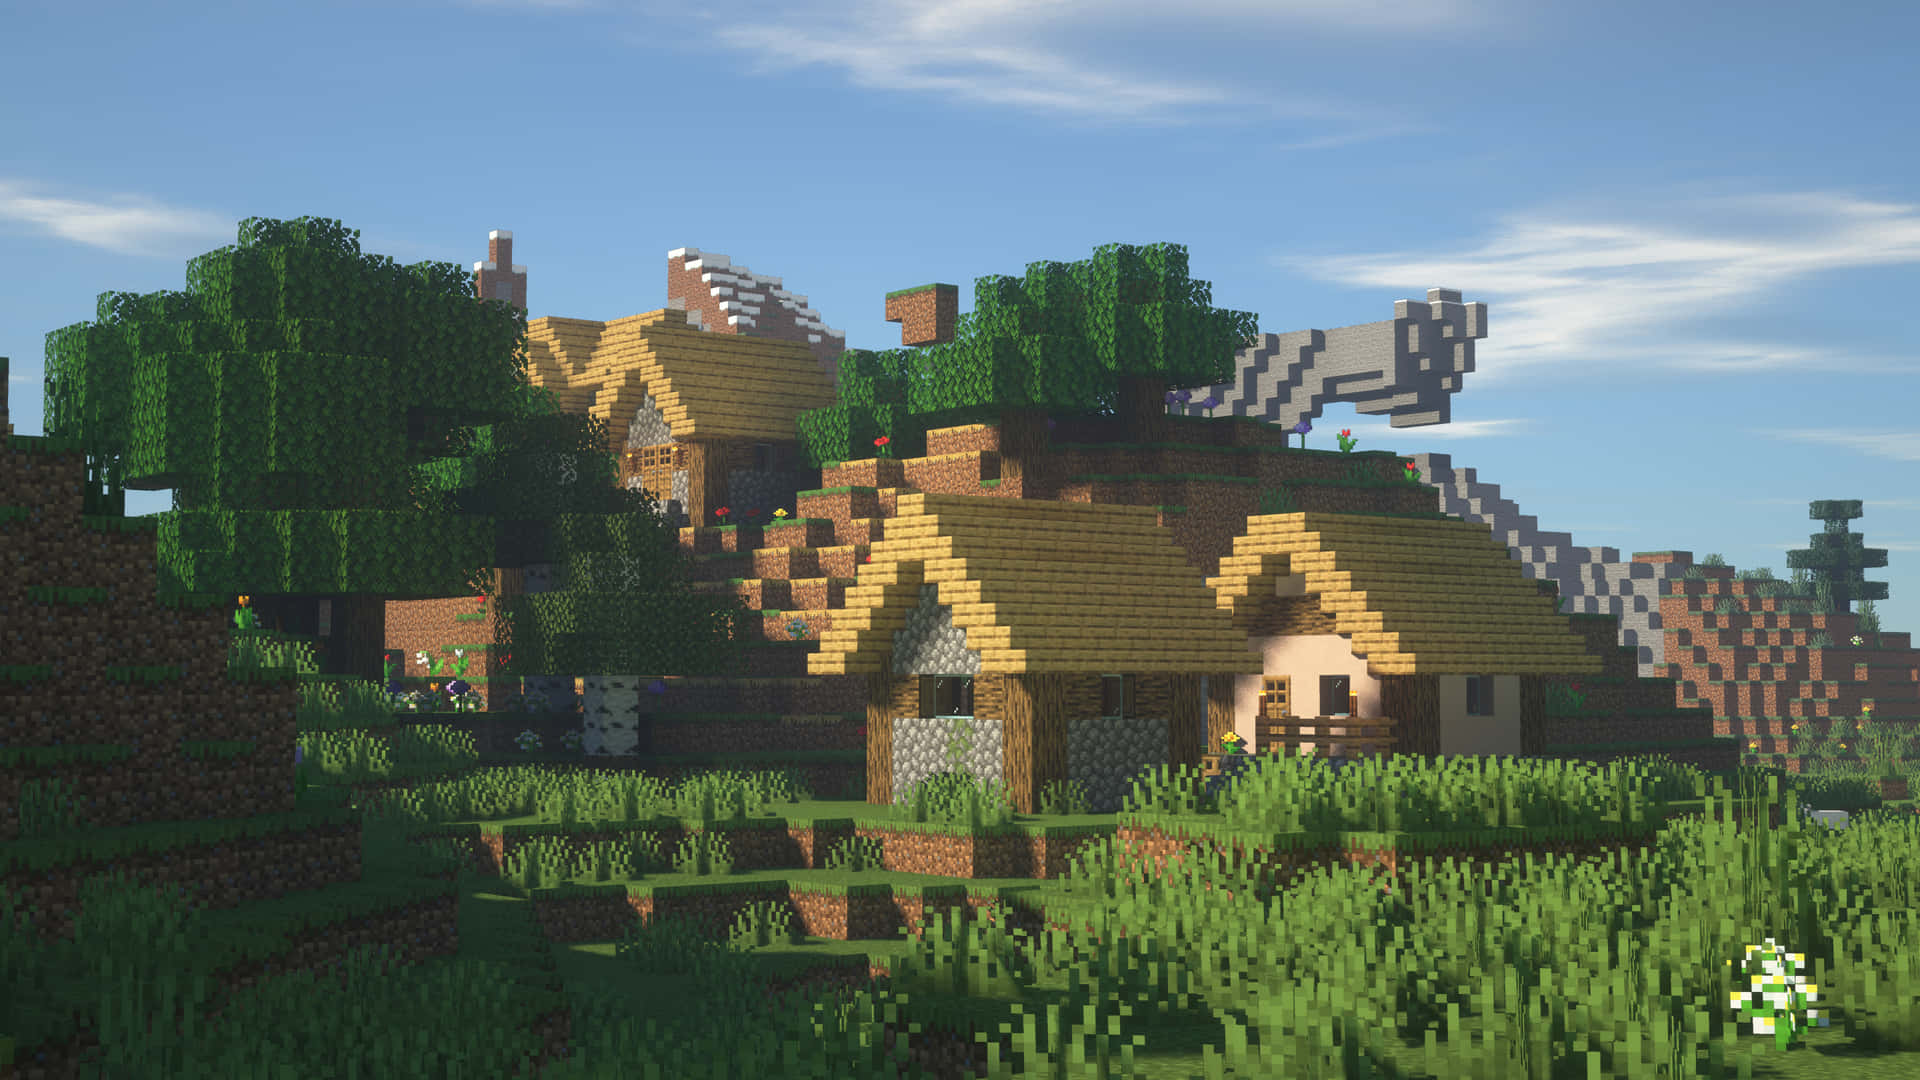 Vibrant Minecraft Village at Dusk Wallpaper